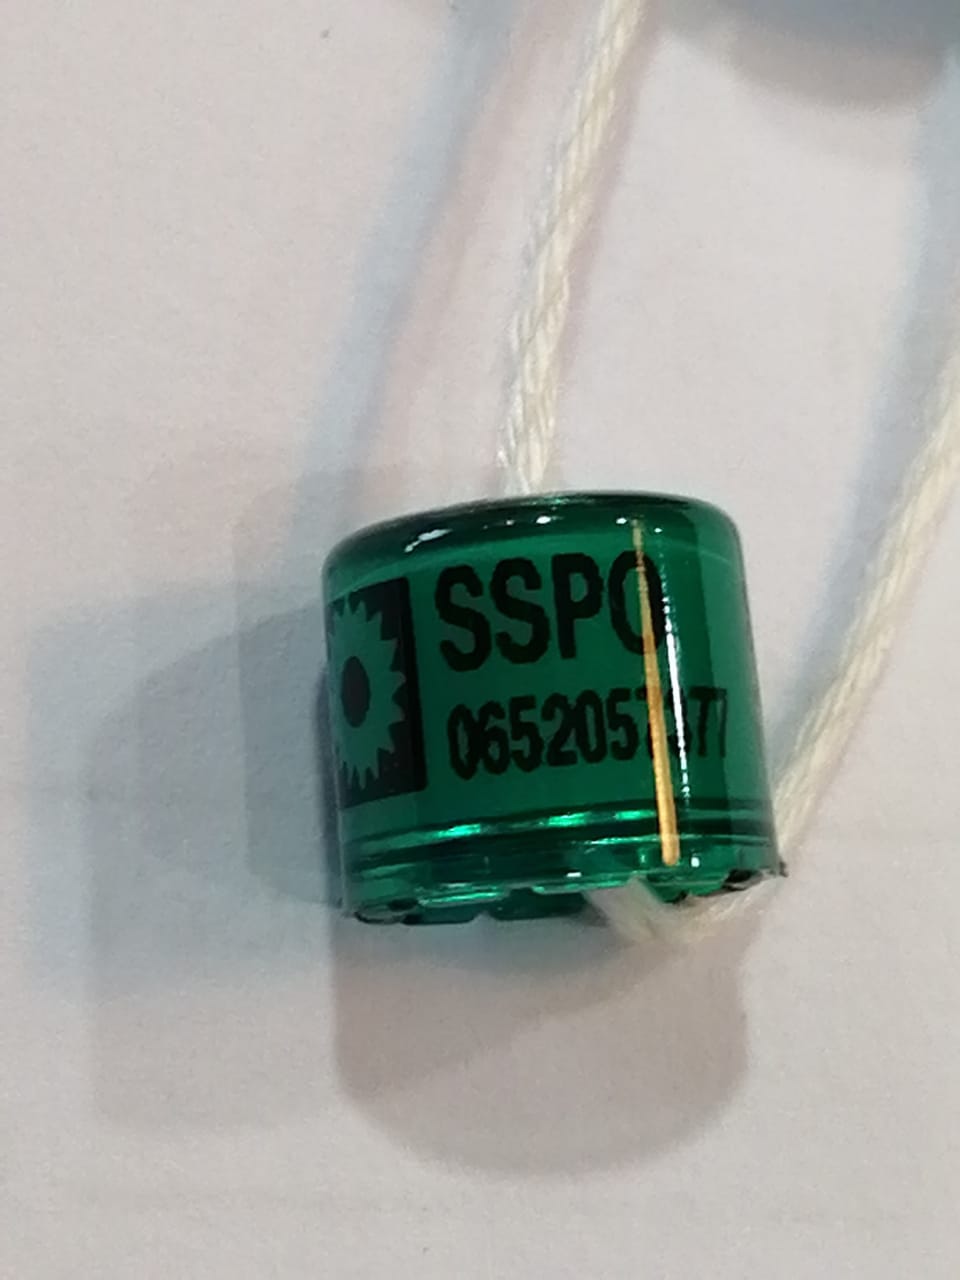 Sspo green ring each